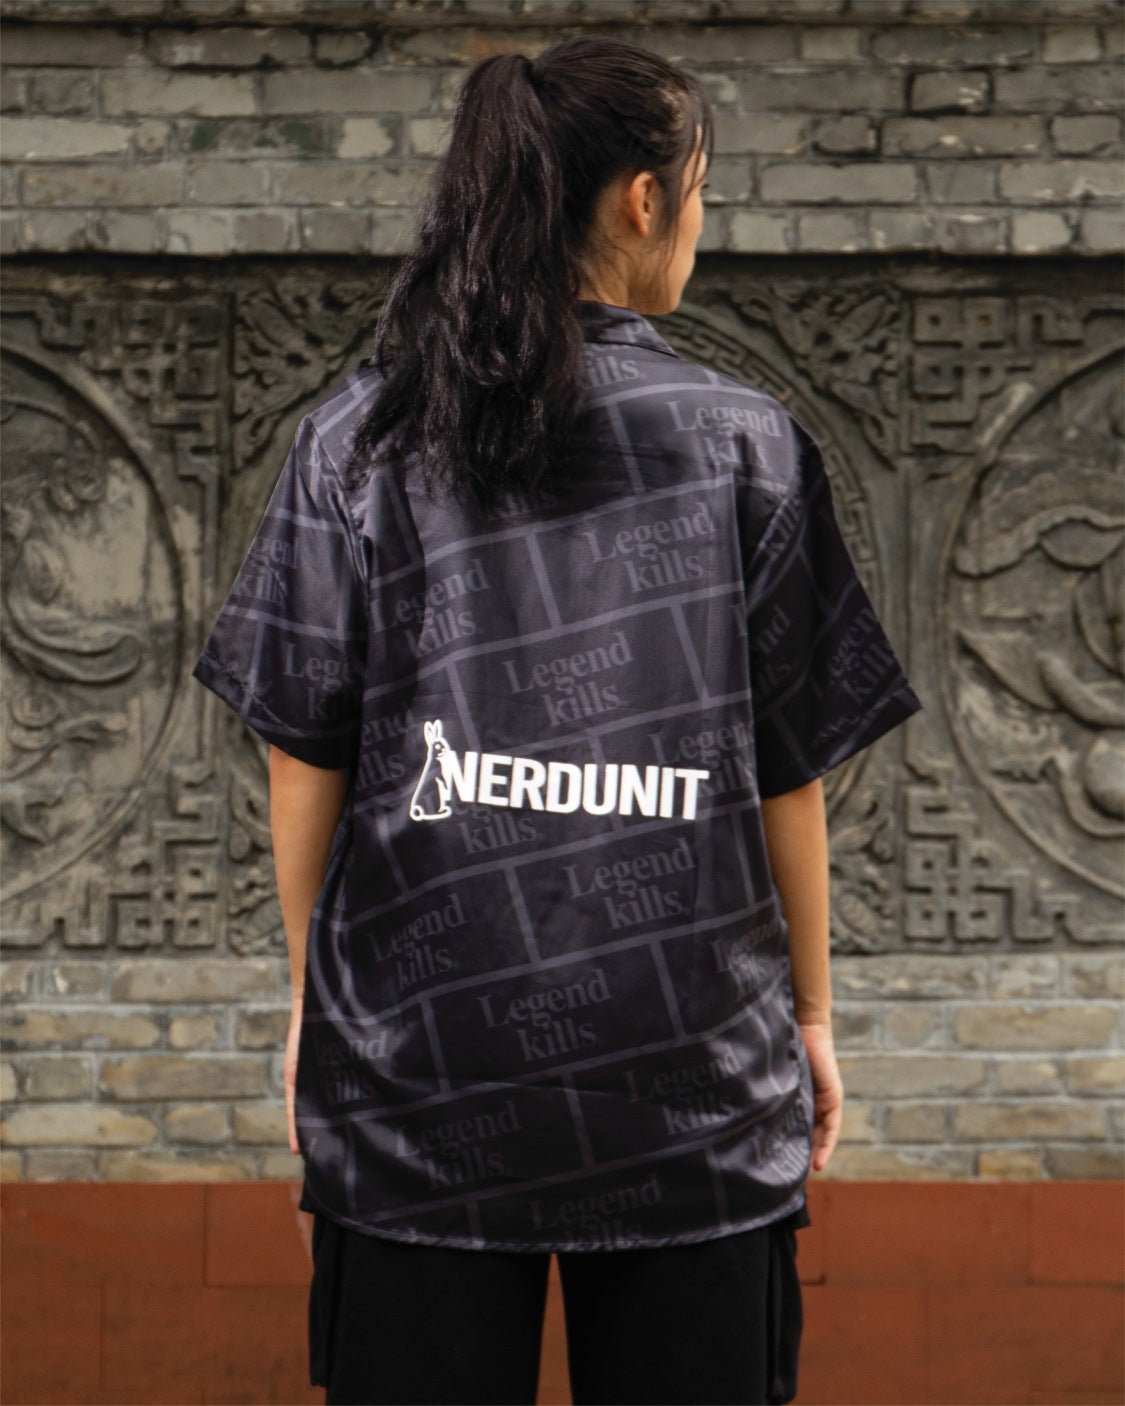 NU x FR2 LegendKills Hawaiian Shirt | Black